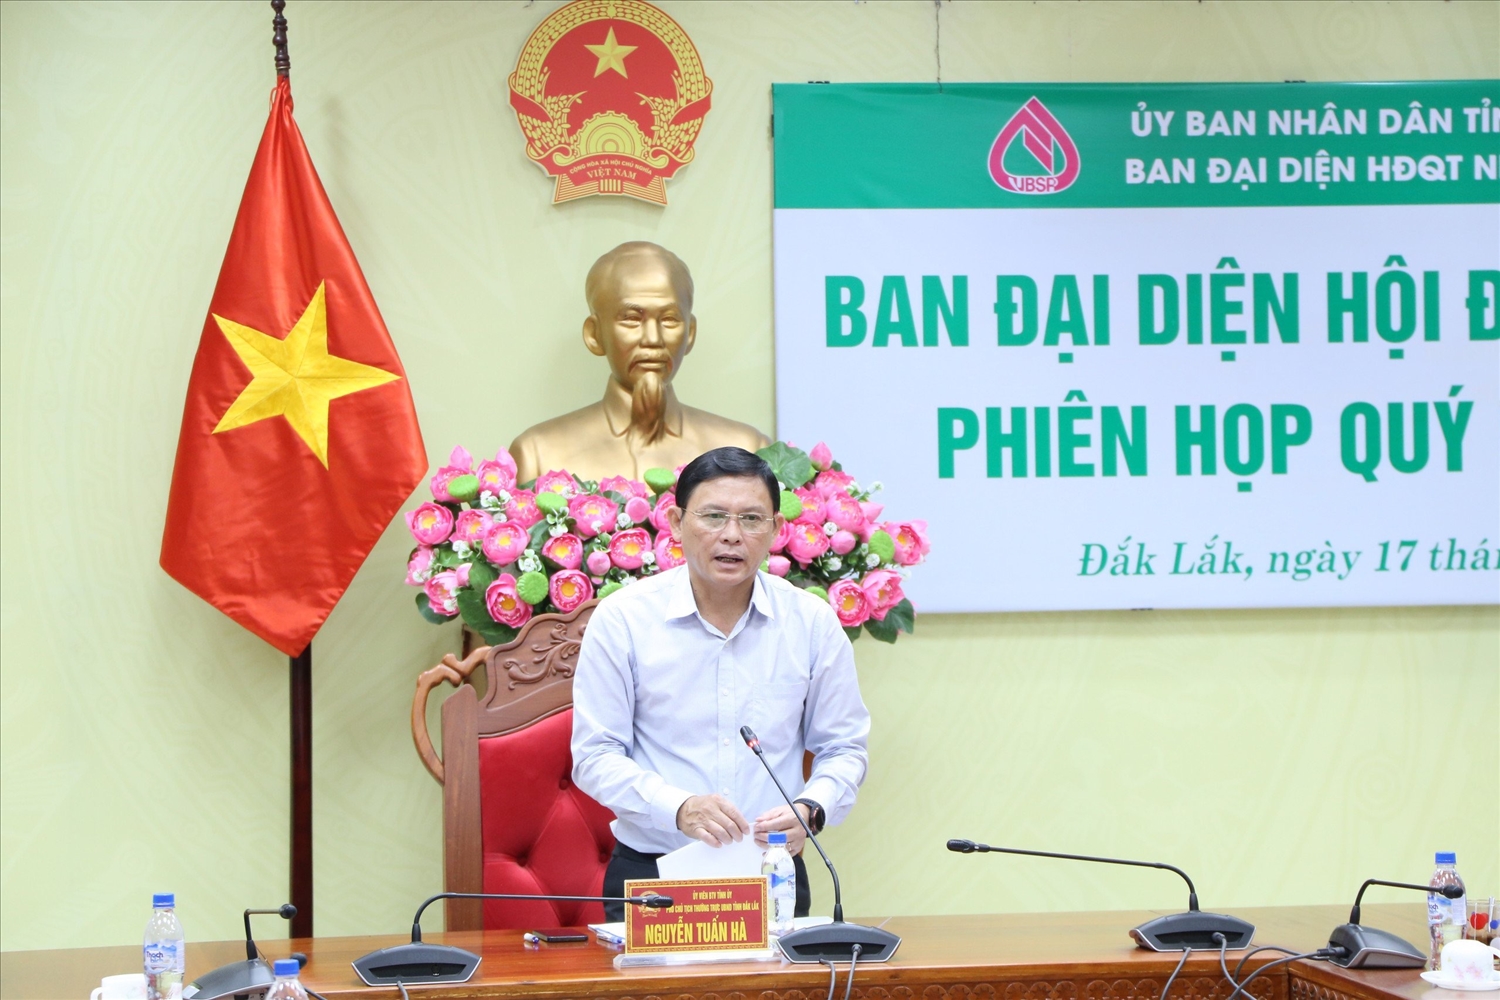 Ông Đào Thái Hòa, Giám đốc Ngân hàng CSXH Chi nhánh Đắk Lắk báo cáo tại phiên họp.